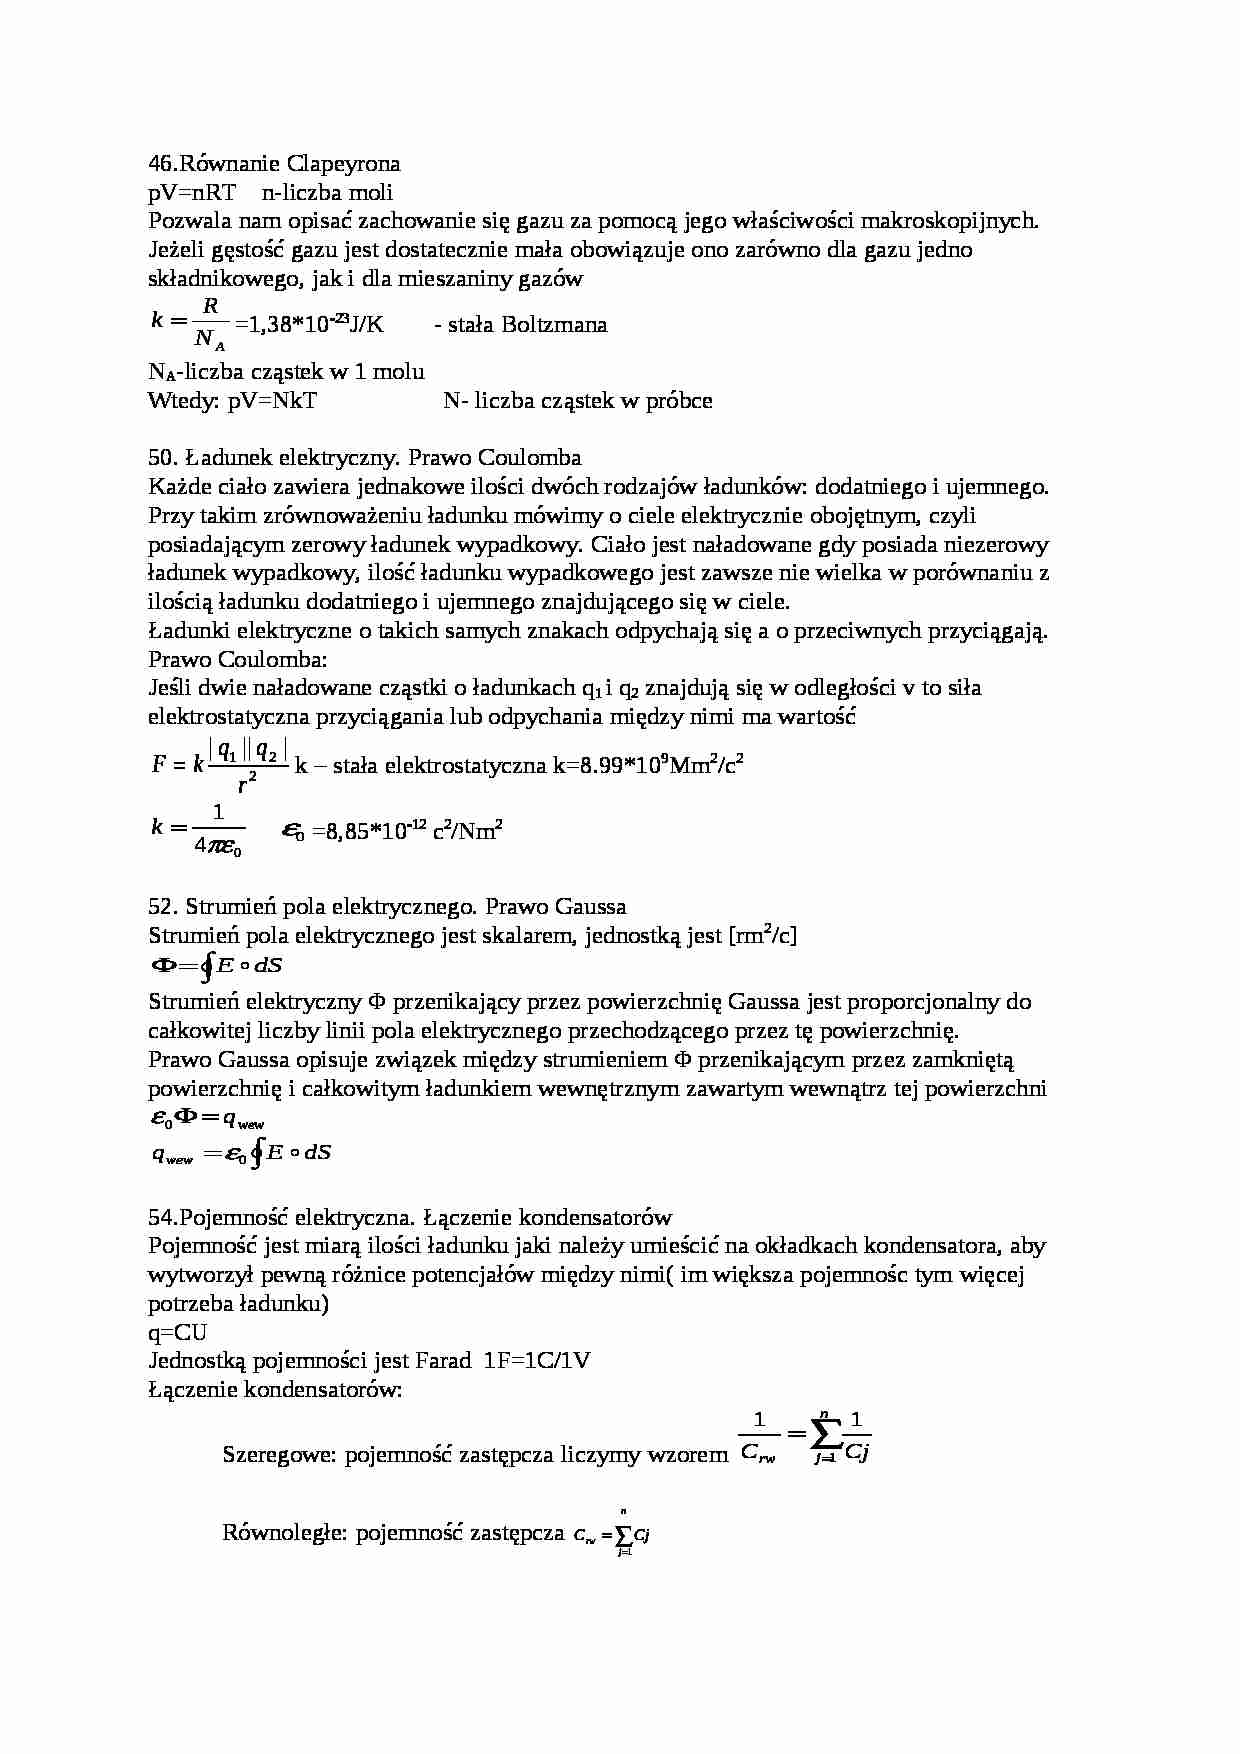 Zagadnienia na egzamin z fizyki. cz. 2 - strona 1